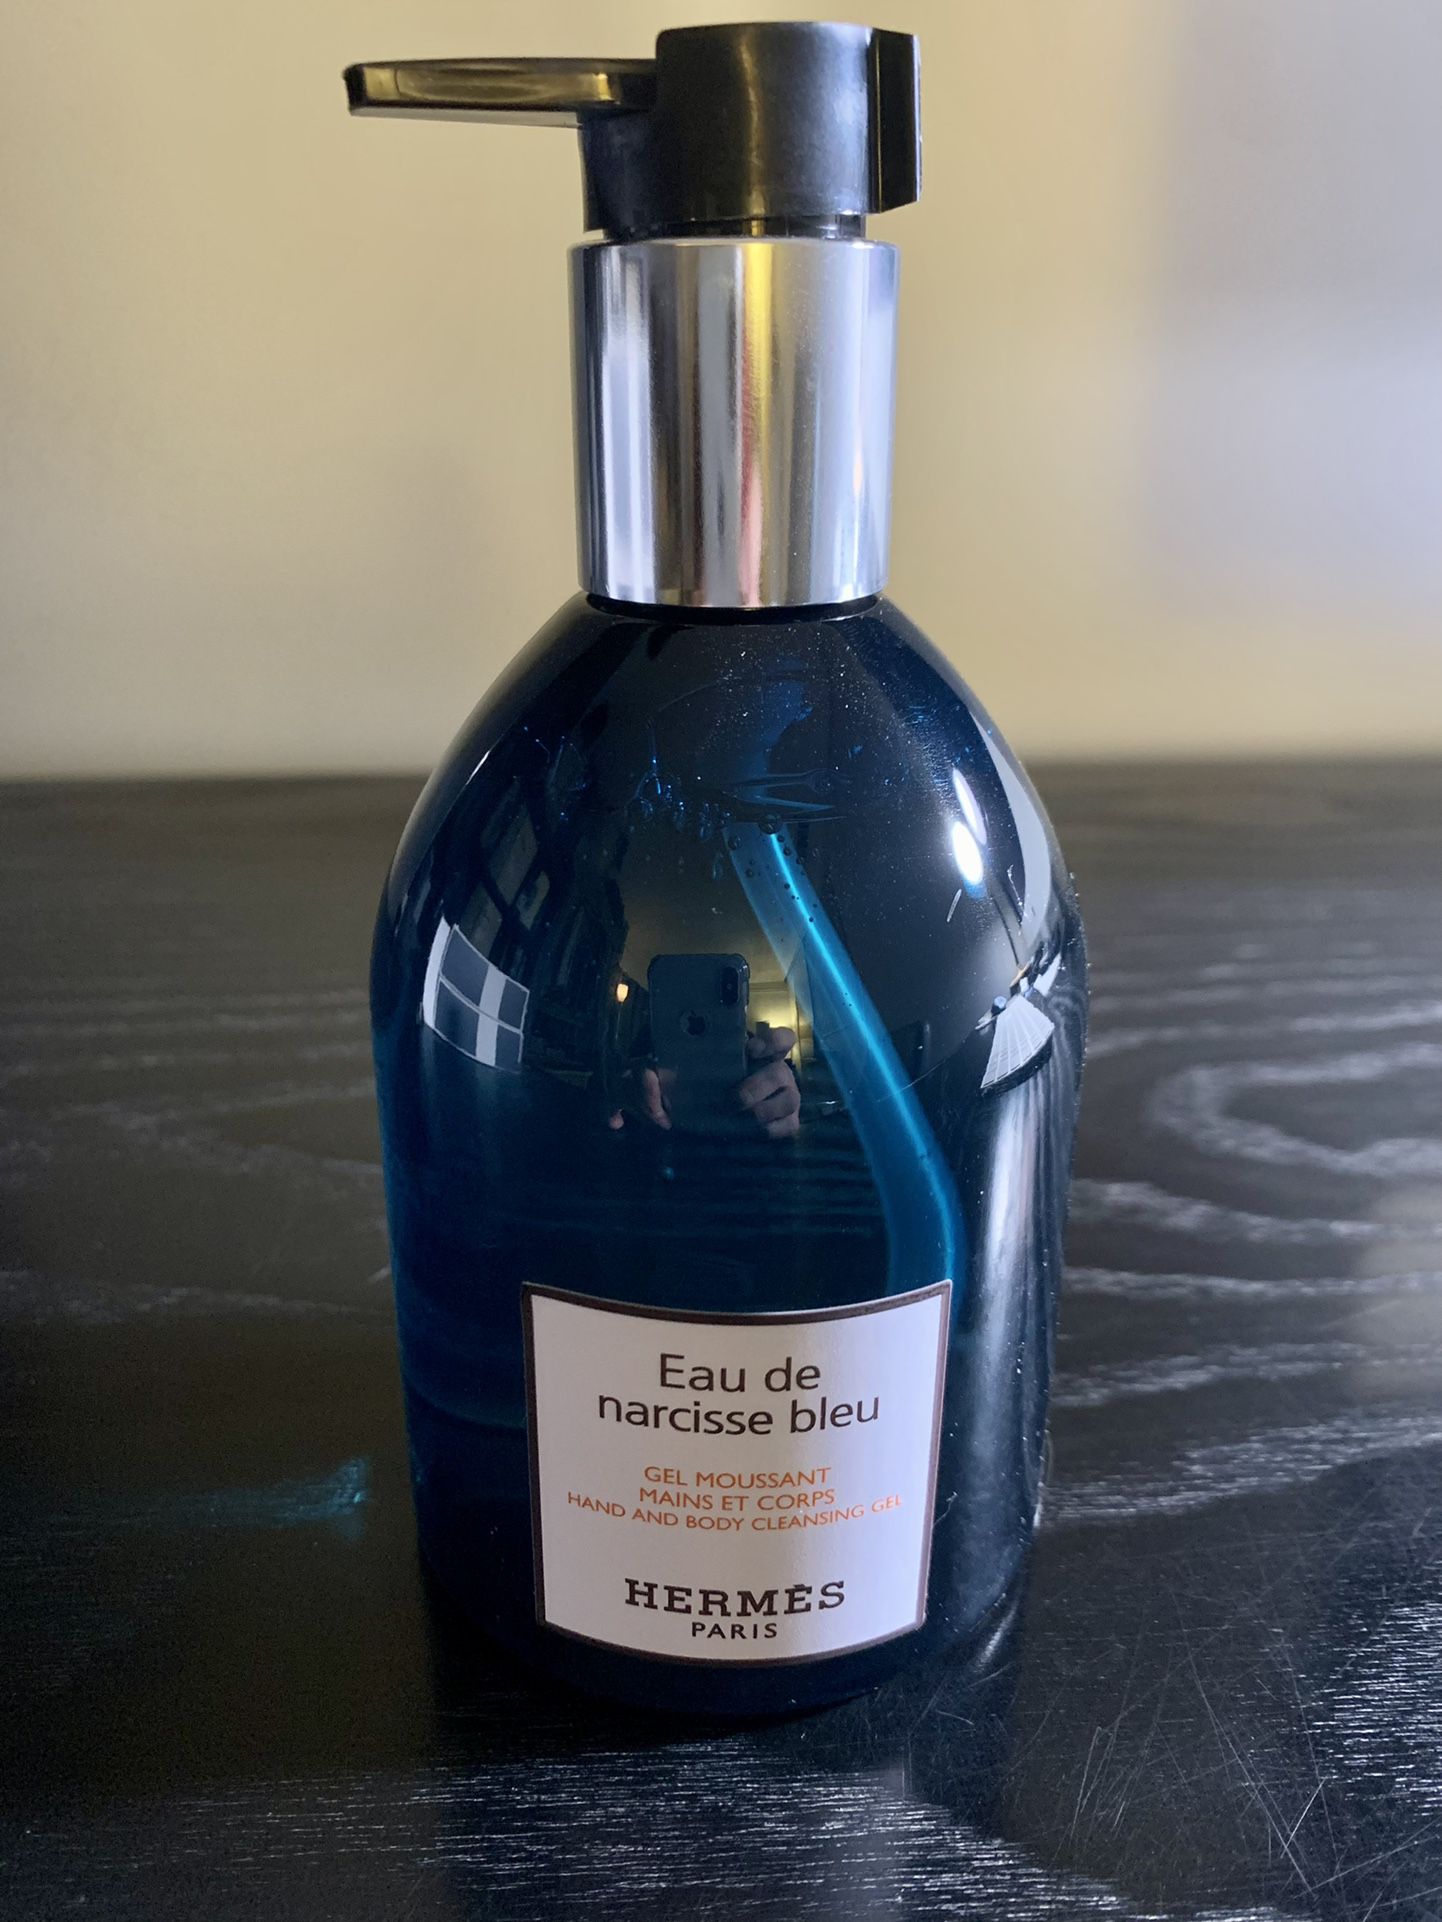 HERMÈS Eau de Narcisse Bleu Hand & Body Cleansing Gel 10-oz NEW!